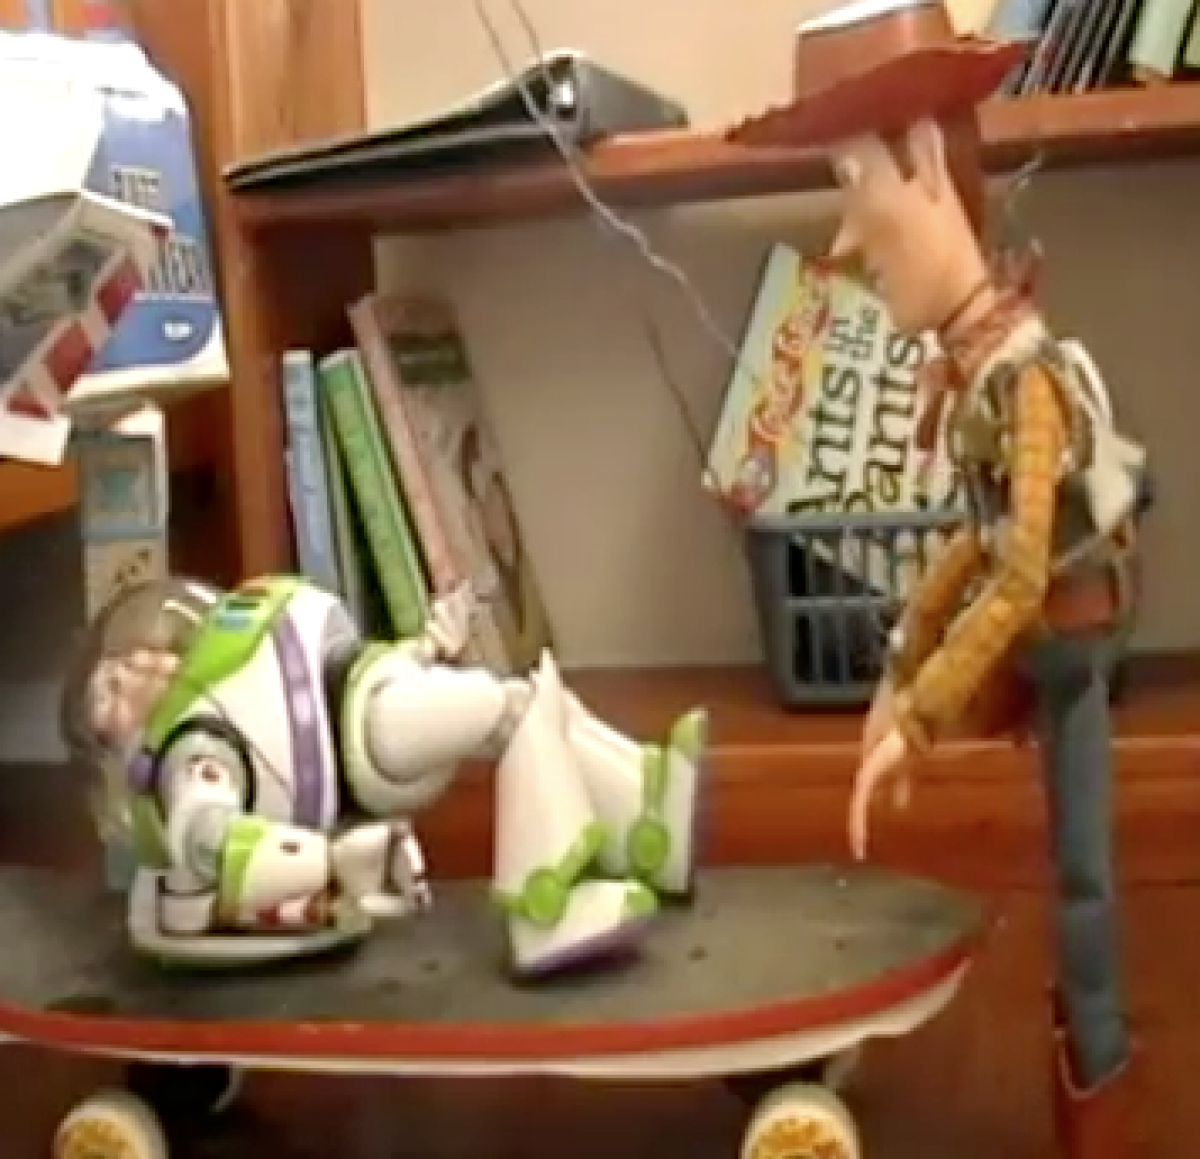 Το αγαπημενο Toy Story γυρισμένο με αληθινά παιχνίδια!